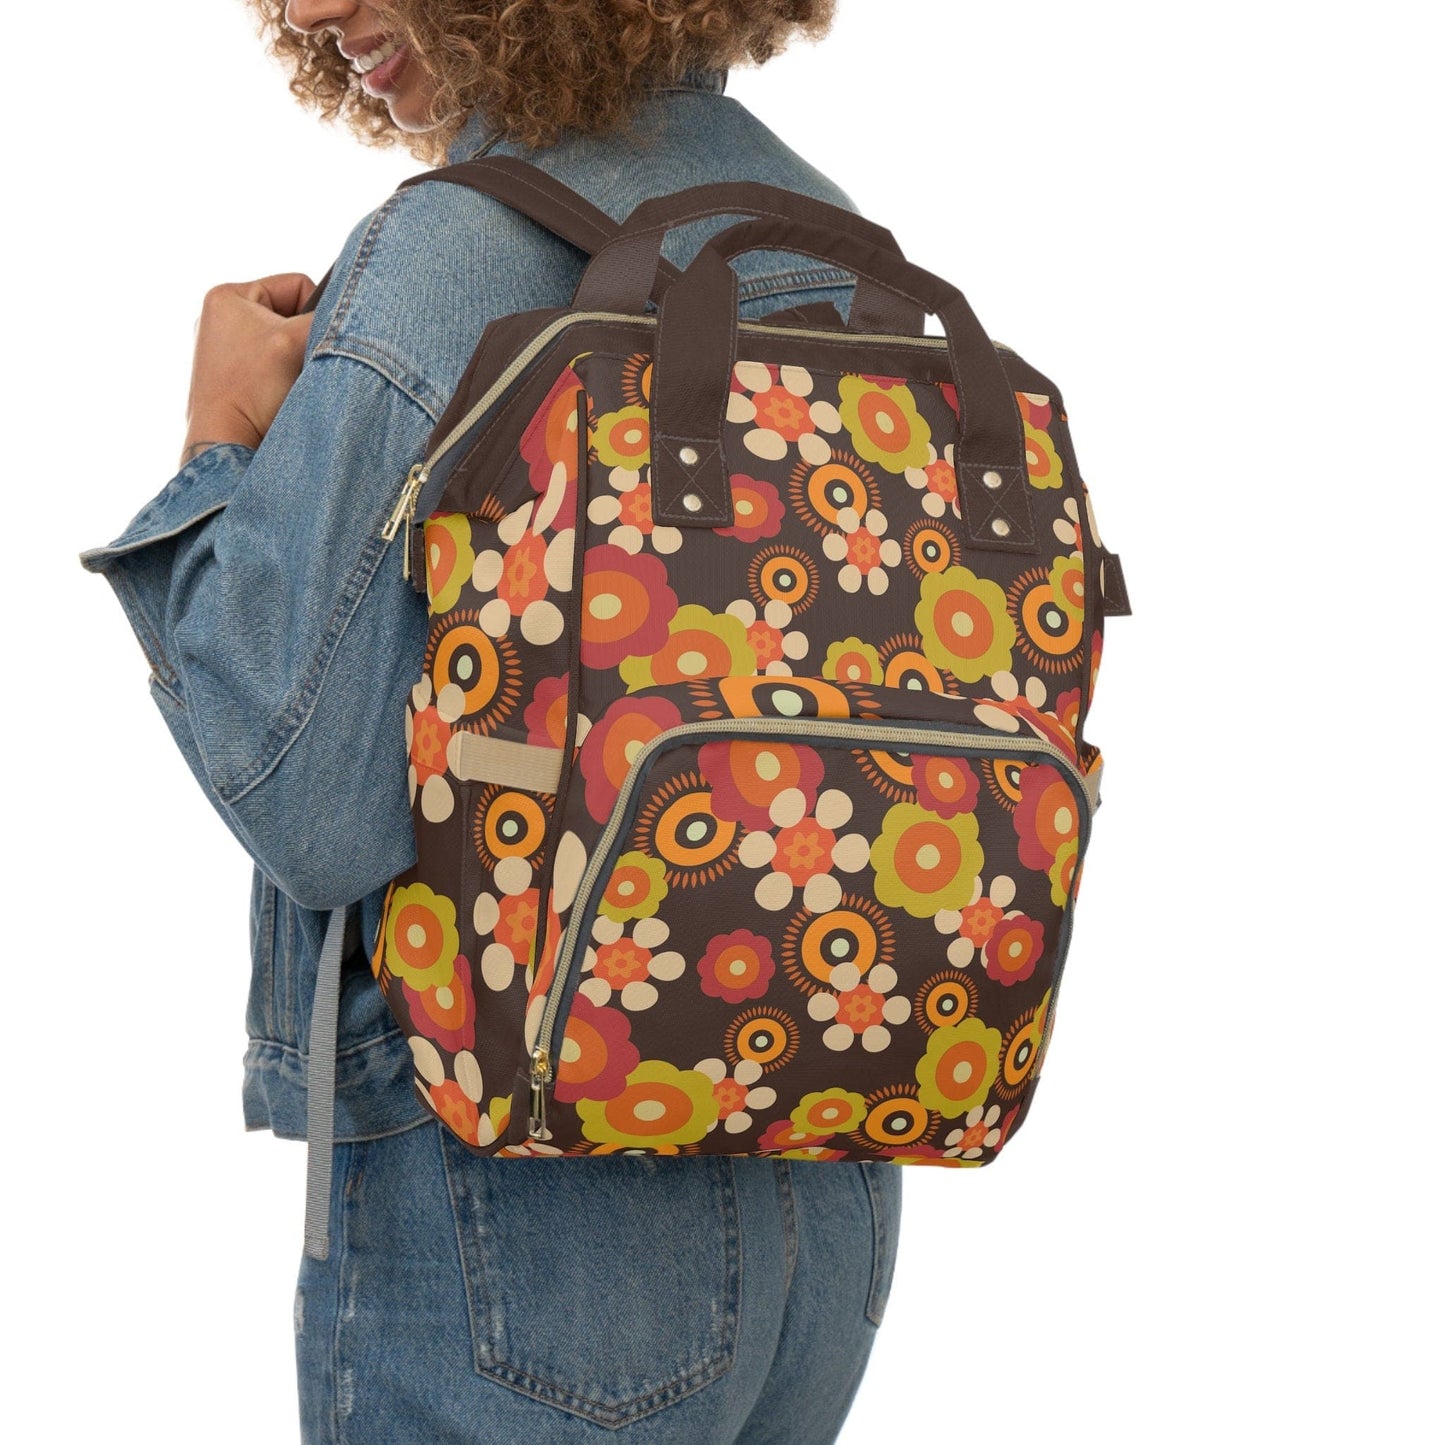 Kate McEnroe New York Retro Funky Groovy Hippie Boho Floral Multifunctional Backpack, Diaper Bag, Weekender Bag, Carry-on Luggage Bag, Multipurpose Backpack Diaper Bags 25833989005466094590